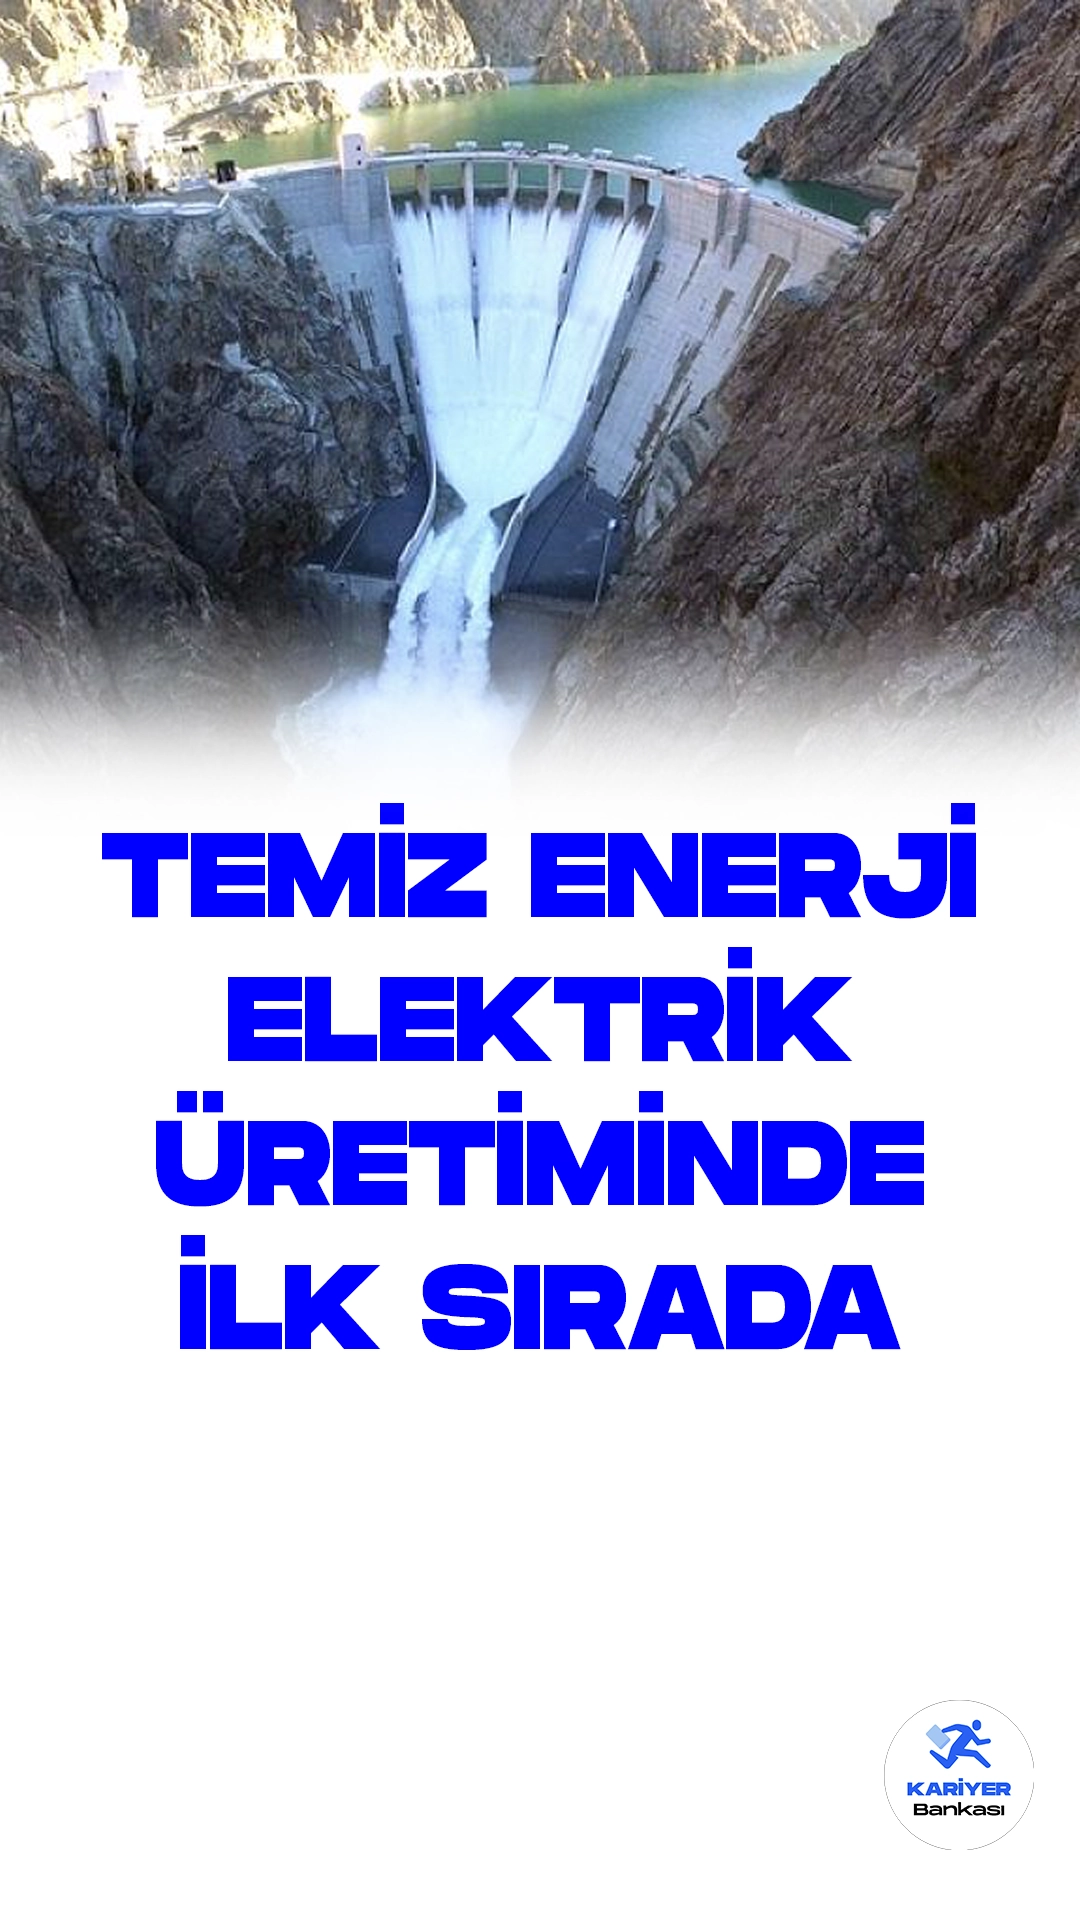 Türkiye'de Günlük Elektrik Üretimi 627 Bin 758 Megavatsaate Ulaştı.Türkiye'de günlük elektrik üretimi, dün itibarıyla 627 bin 758 megavatsaat olarak gerçekleşti. Üretimde başı çeken ise yüzde 21,1 payla barajlı hidroelektrik santralleri oldu.